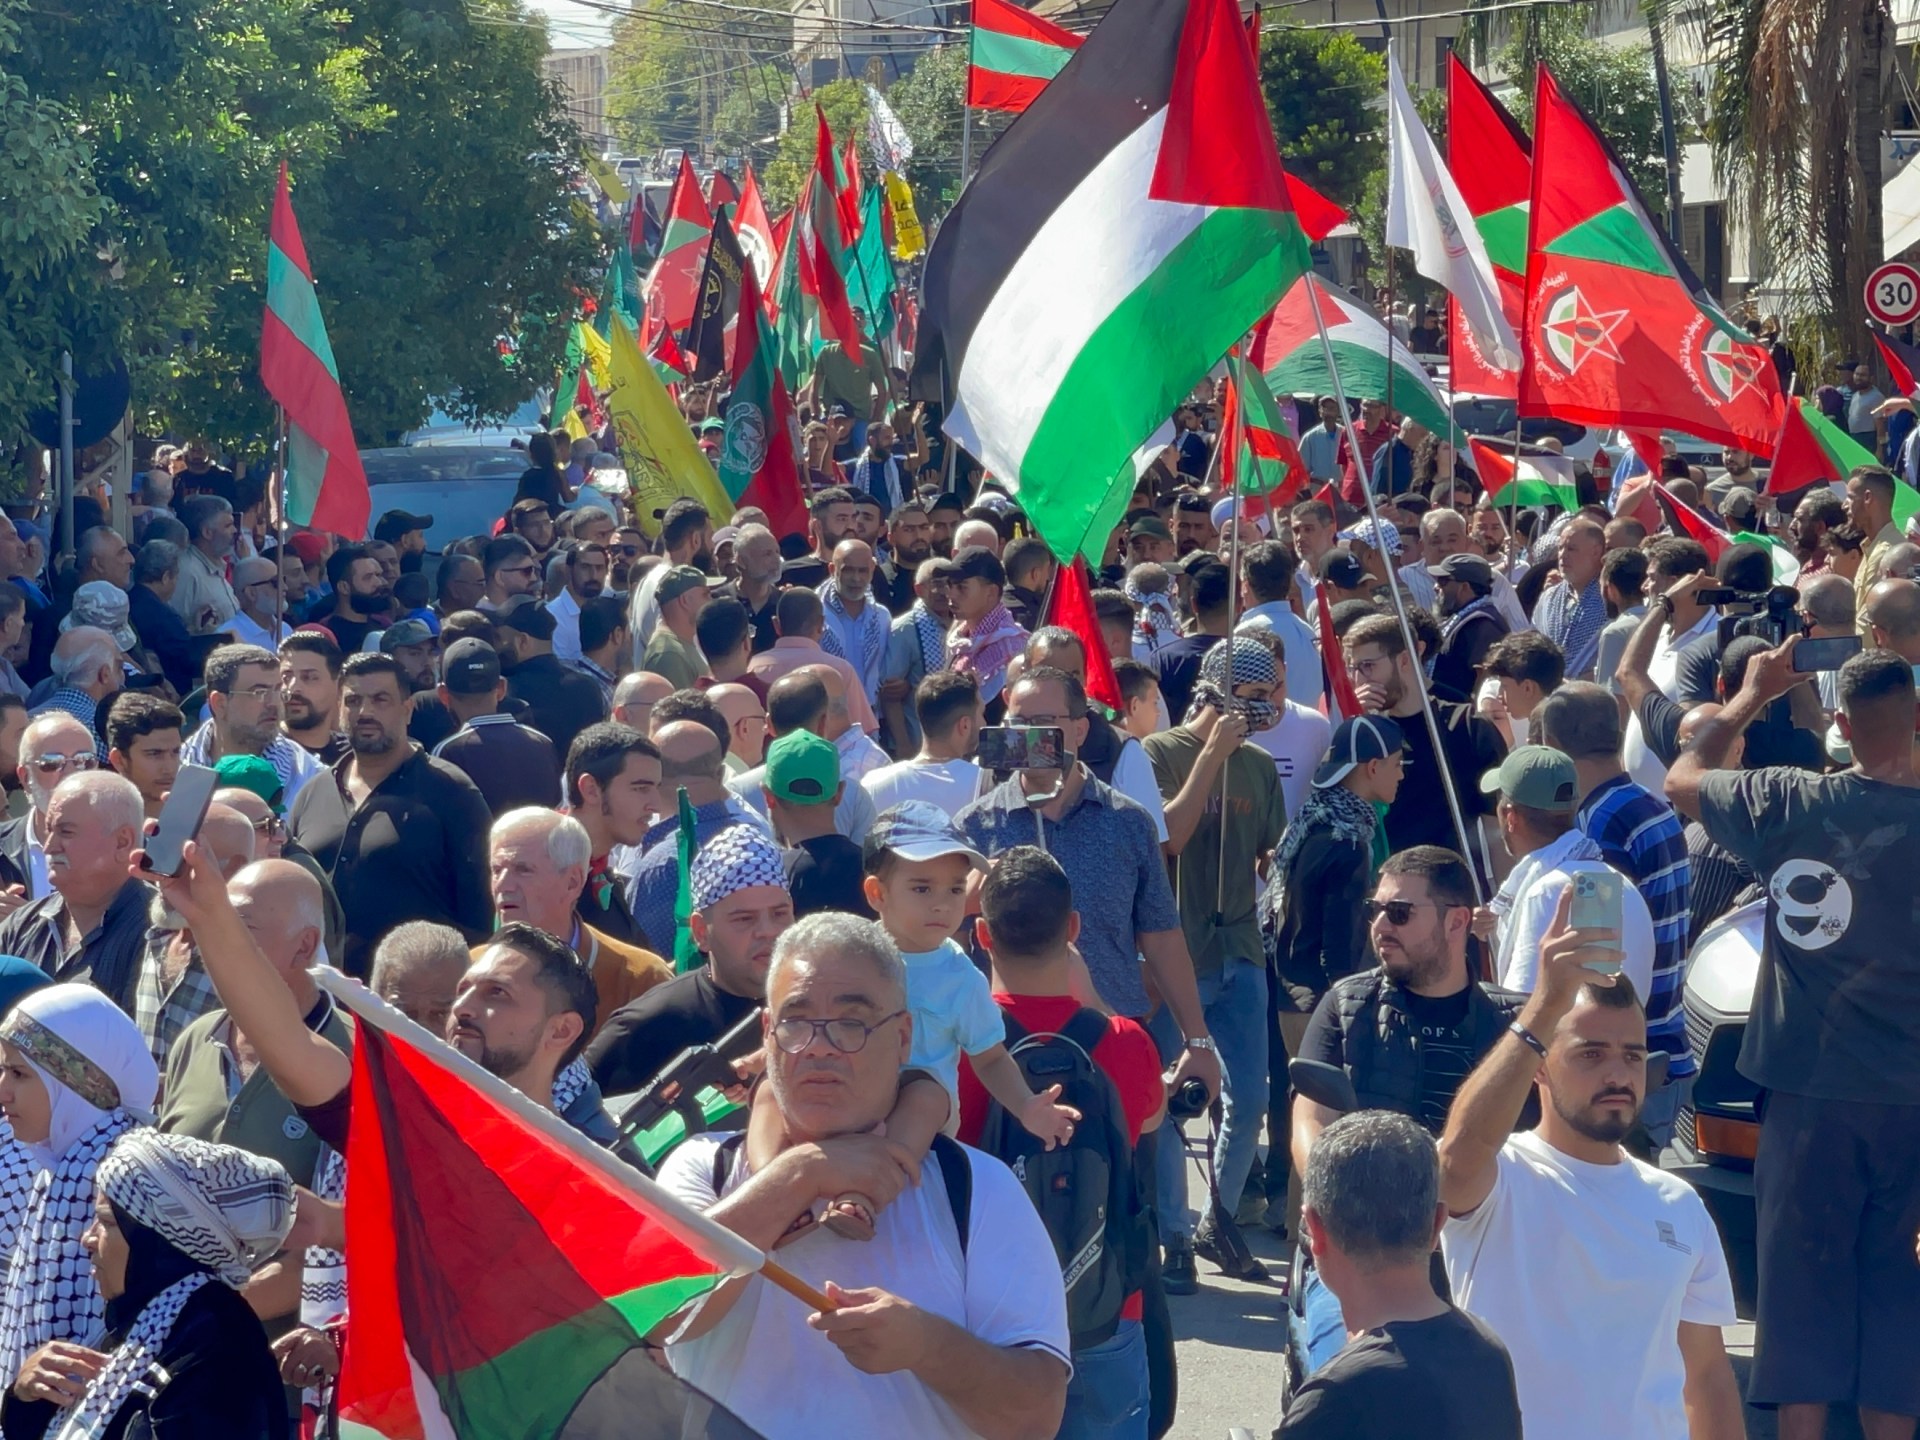 تواصل المظاهرات في عواصم عربية وإسلامية تنديدا بقصف مستشفى المعمداني | أخبار – البوكس نيوز